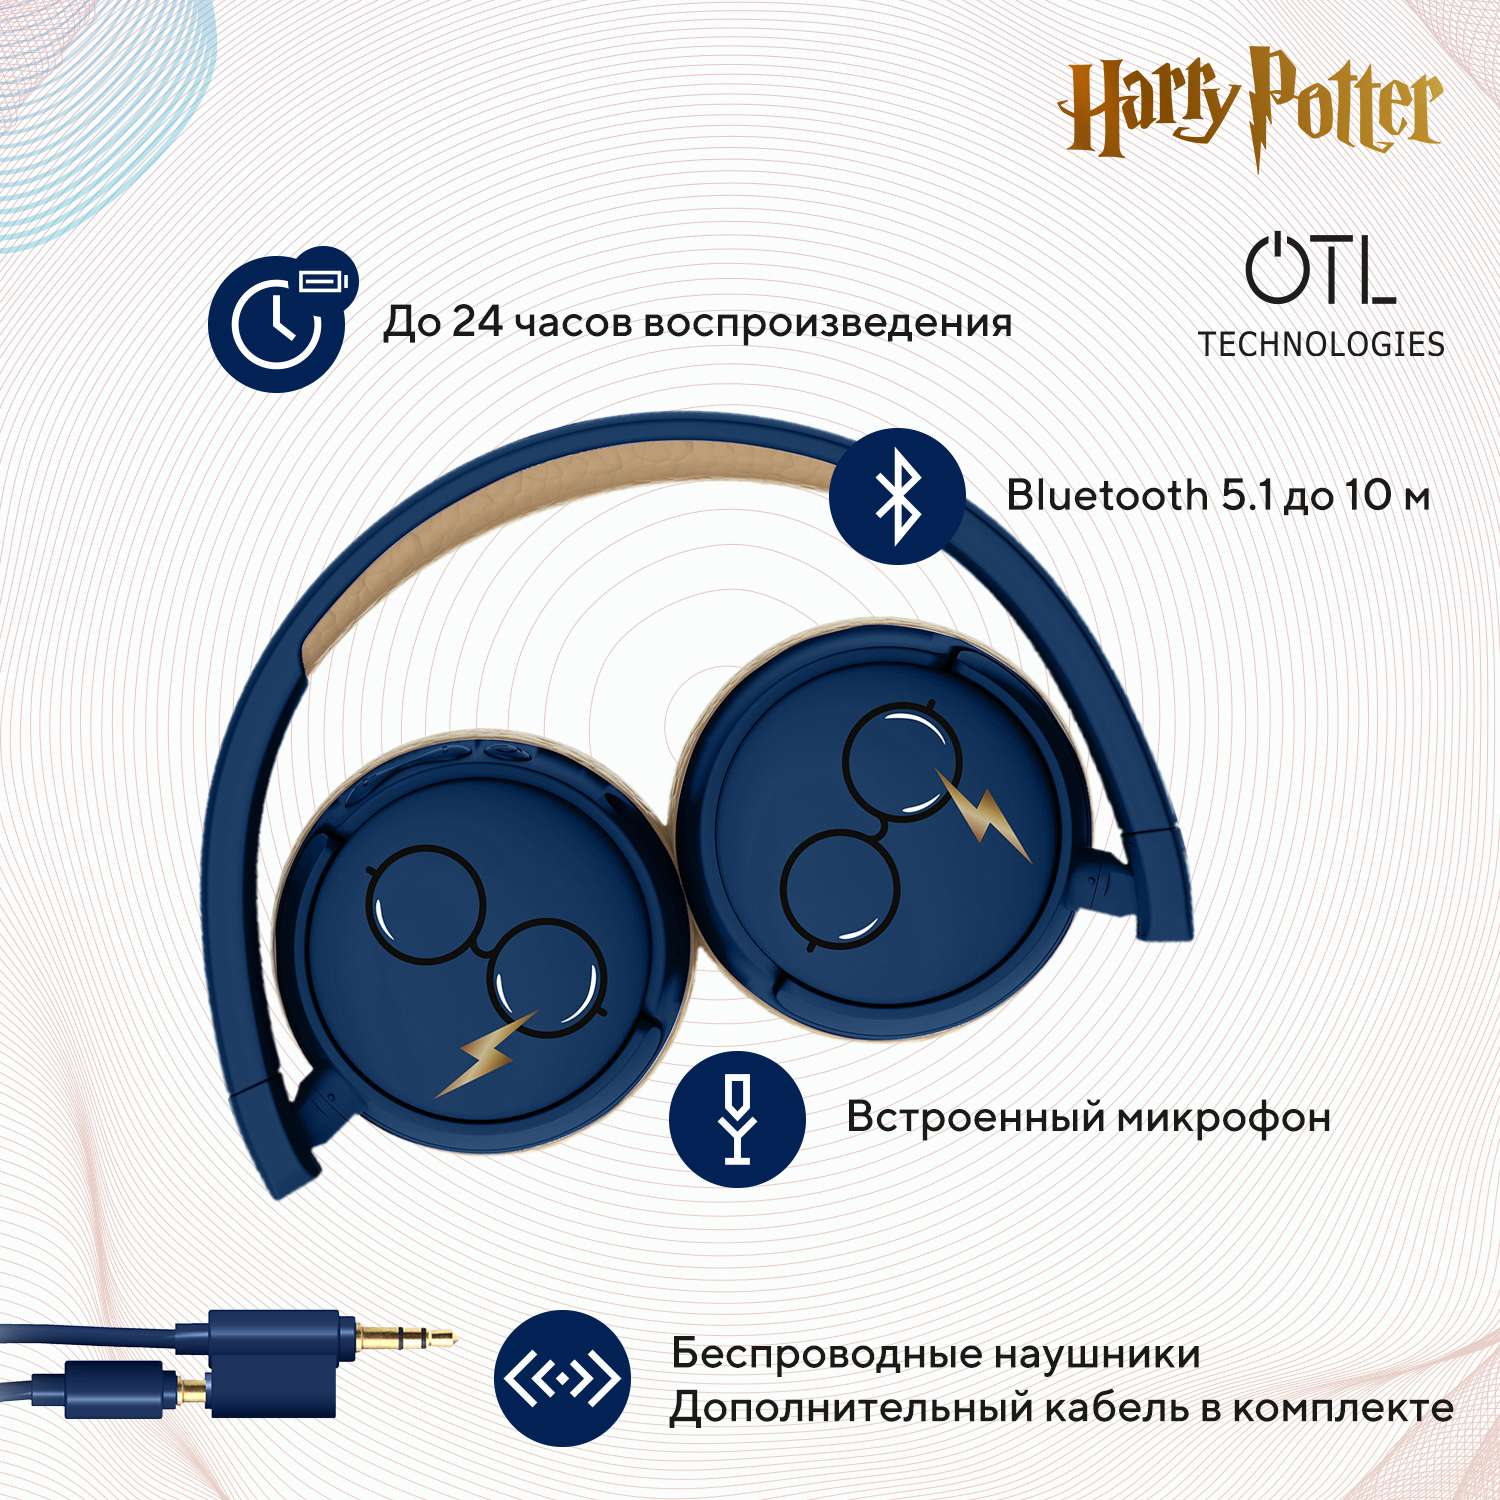 Наушники беспроводные OTL Technologies детские Гарри Поттер синие - фото 2